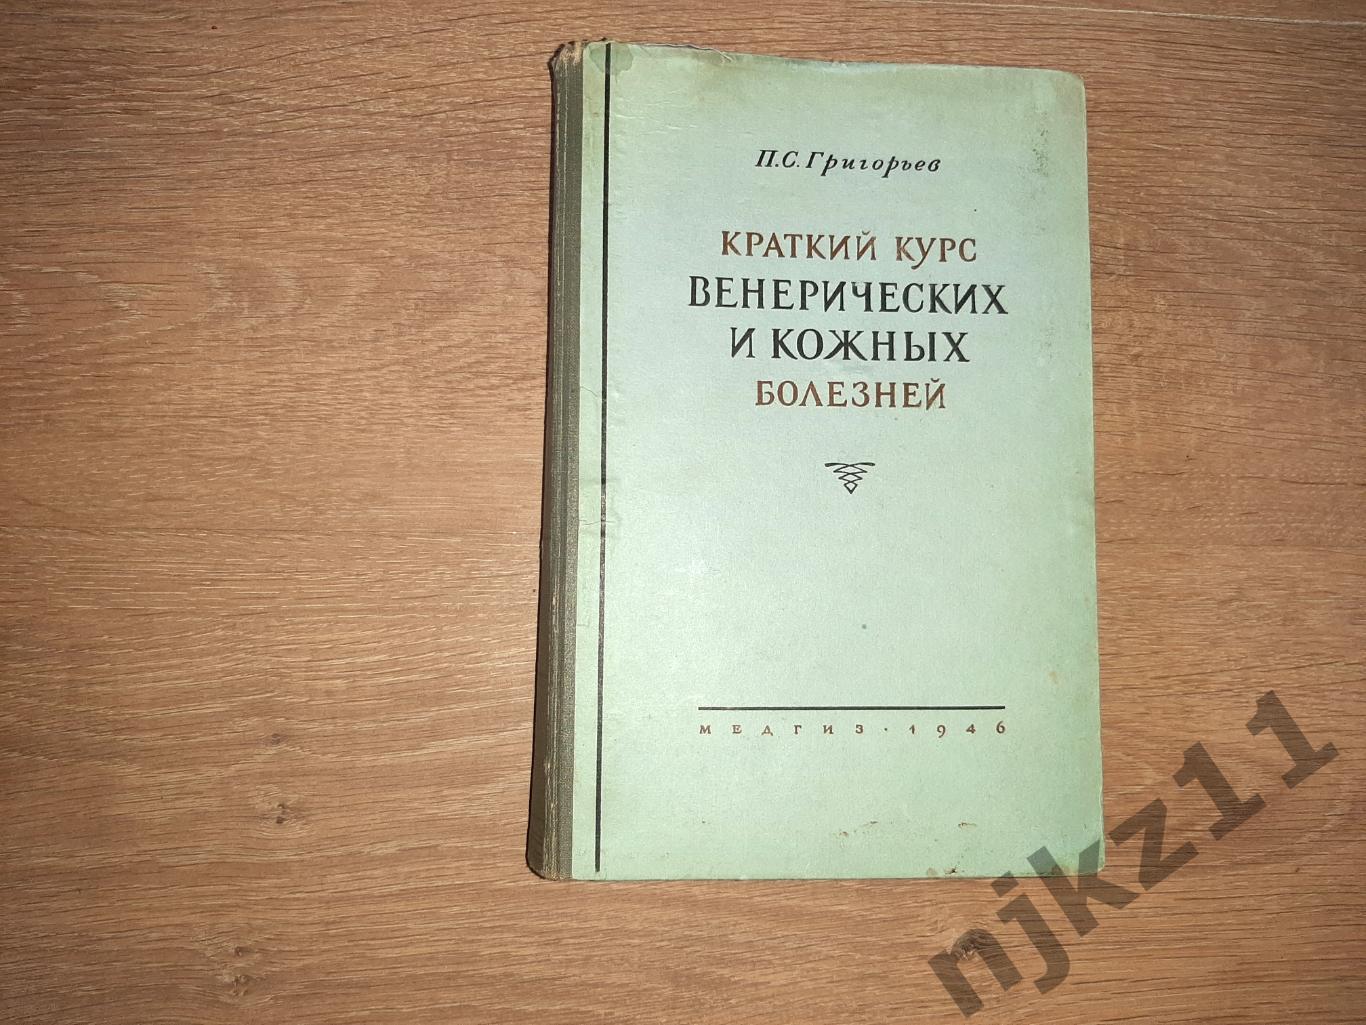 Григорьев, П.С. Краткий курс венерических и кожных болезней 1946г